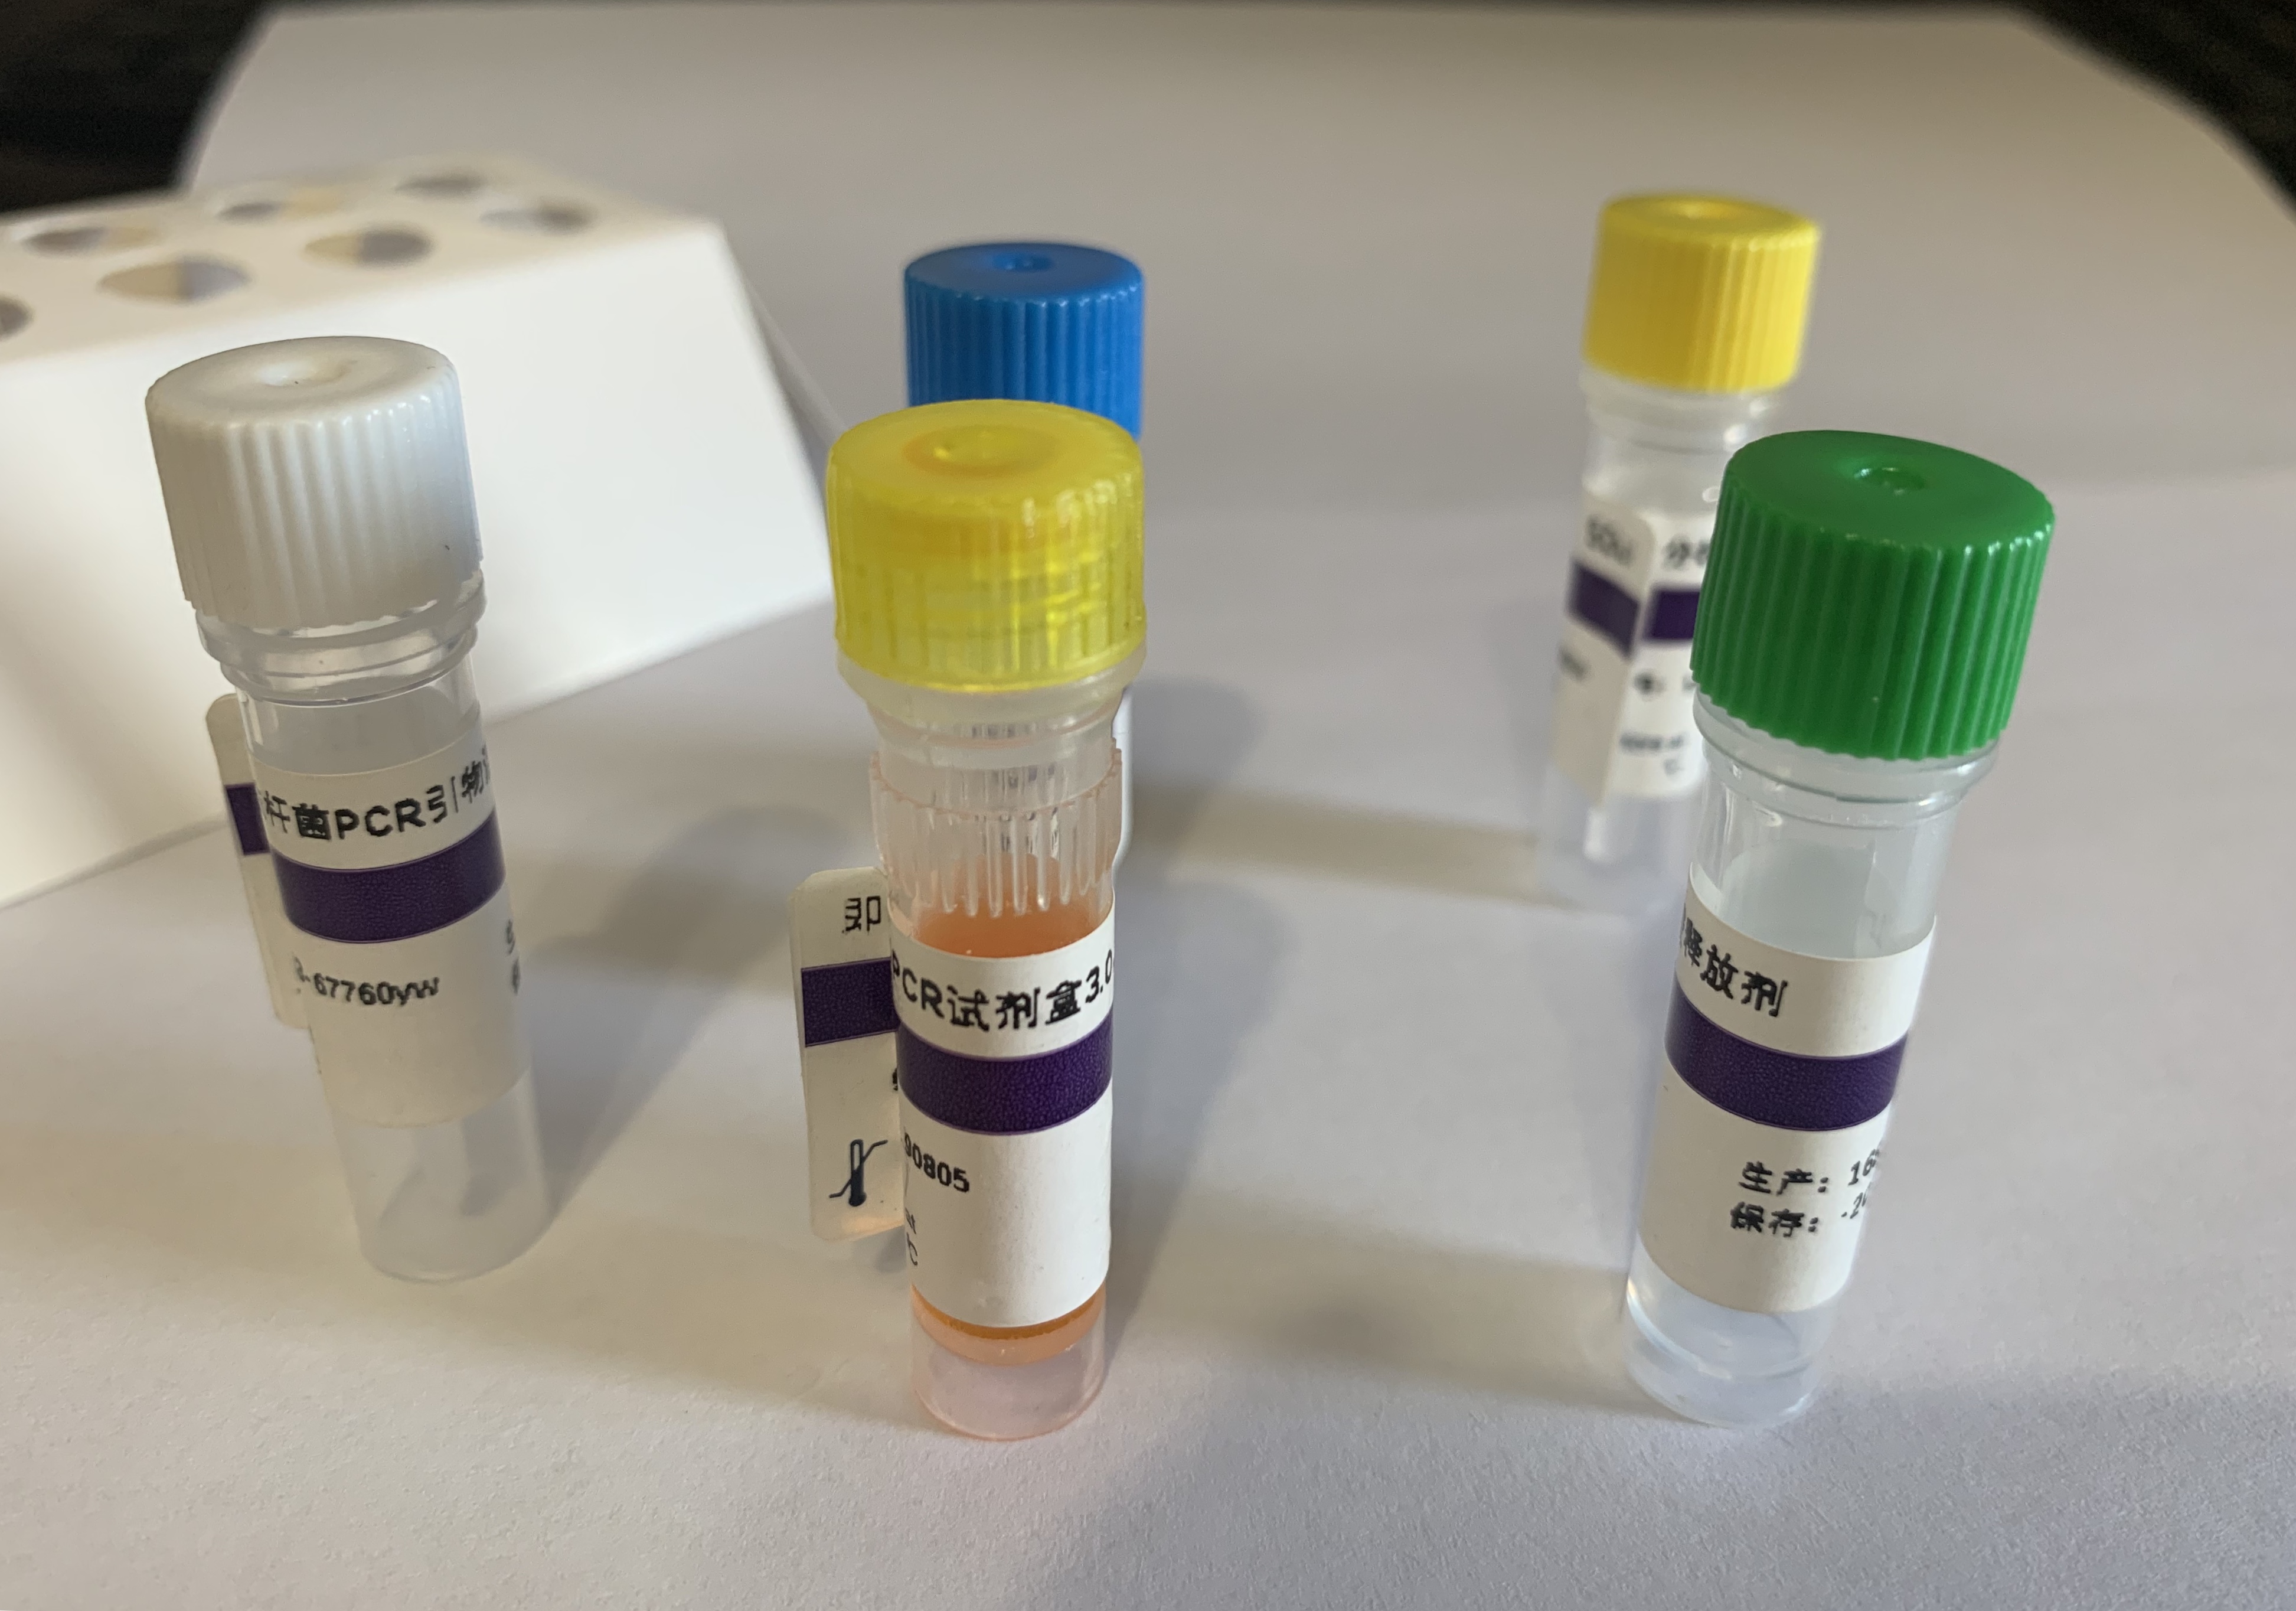 禽类肉瘤病毒探针法荧光定量RT-PCR试剂盒